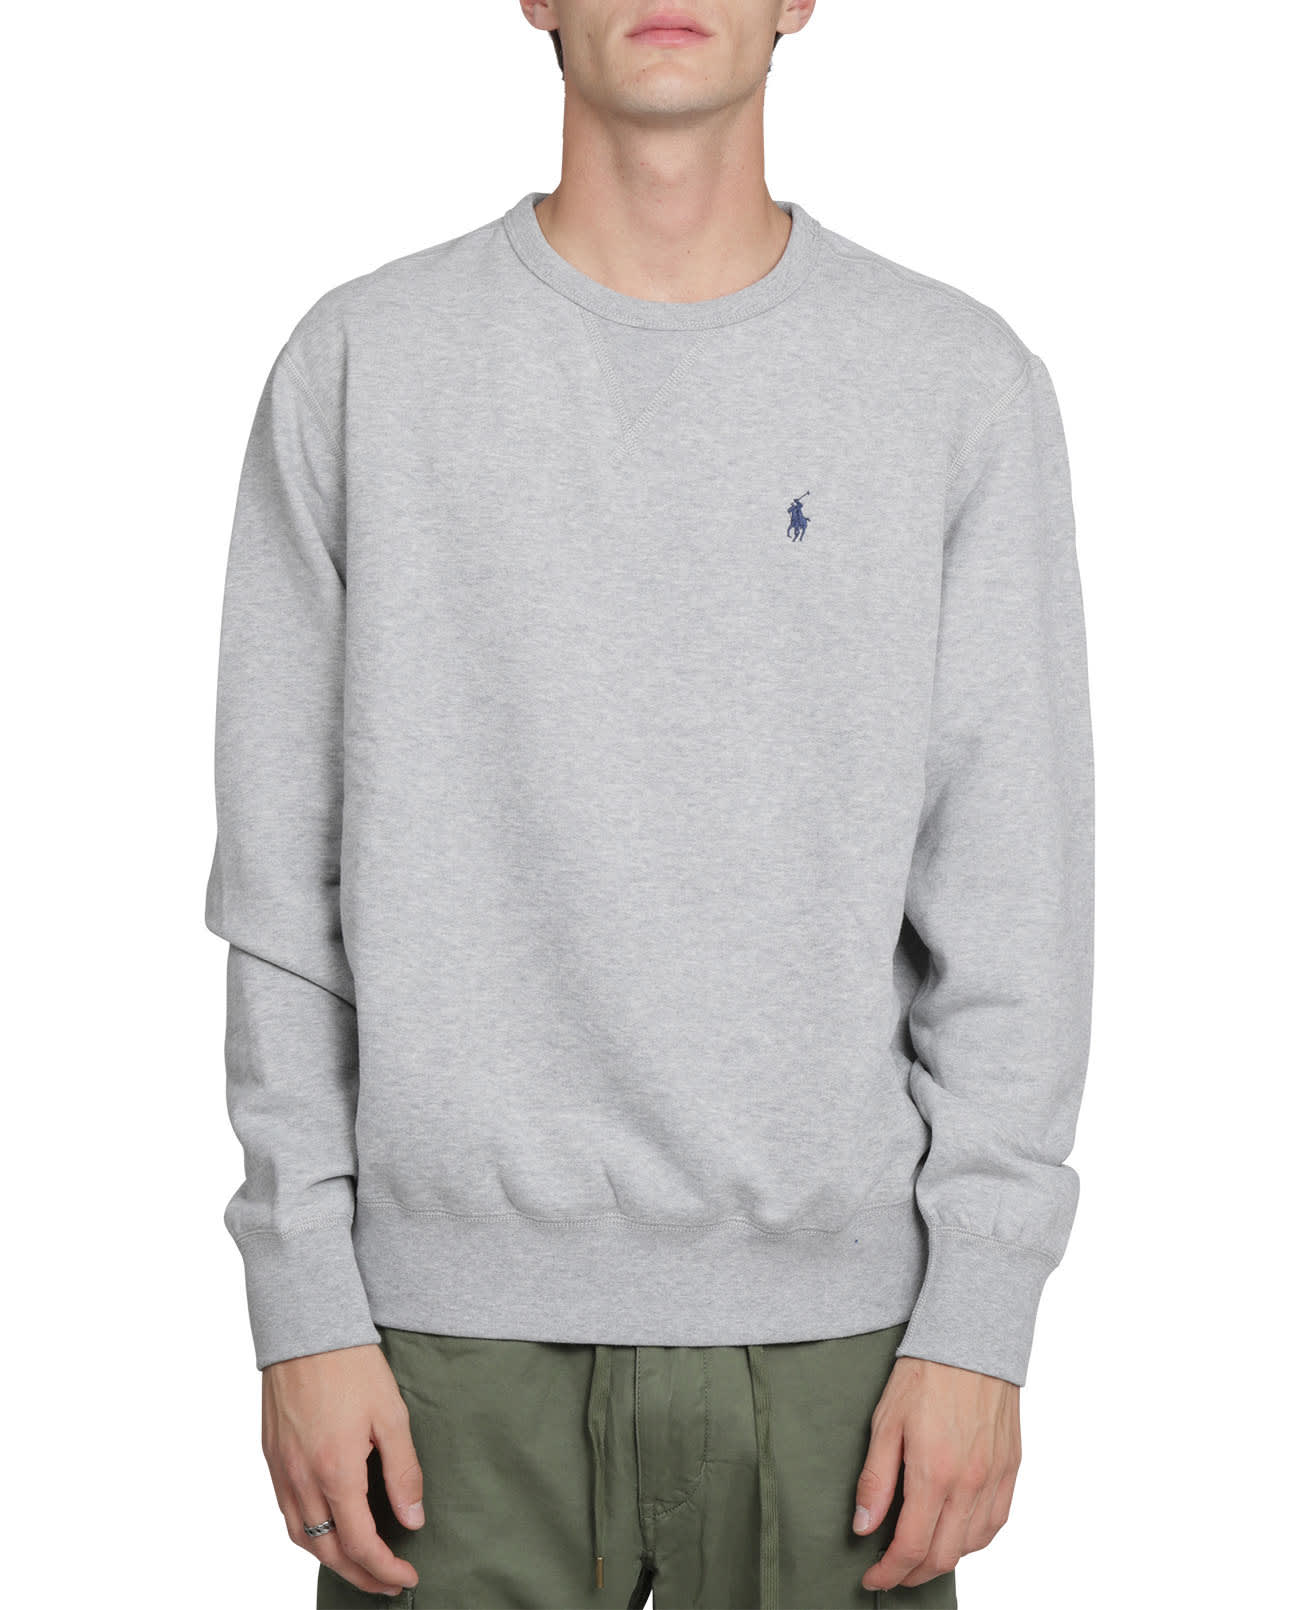 Ralph Lauren Grey Crewneck Sweater